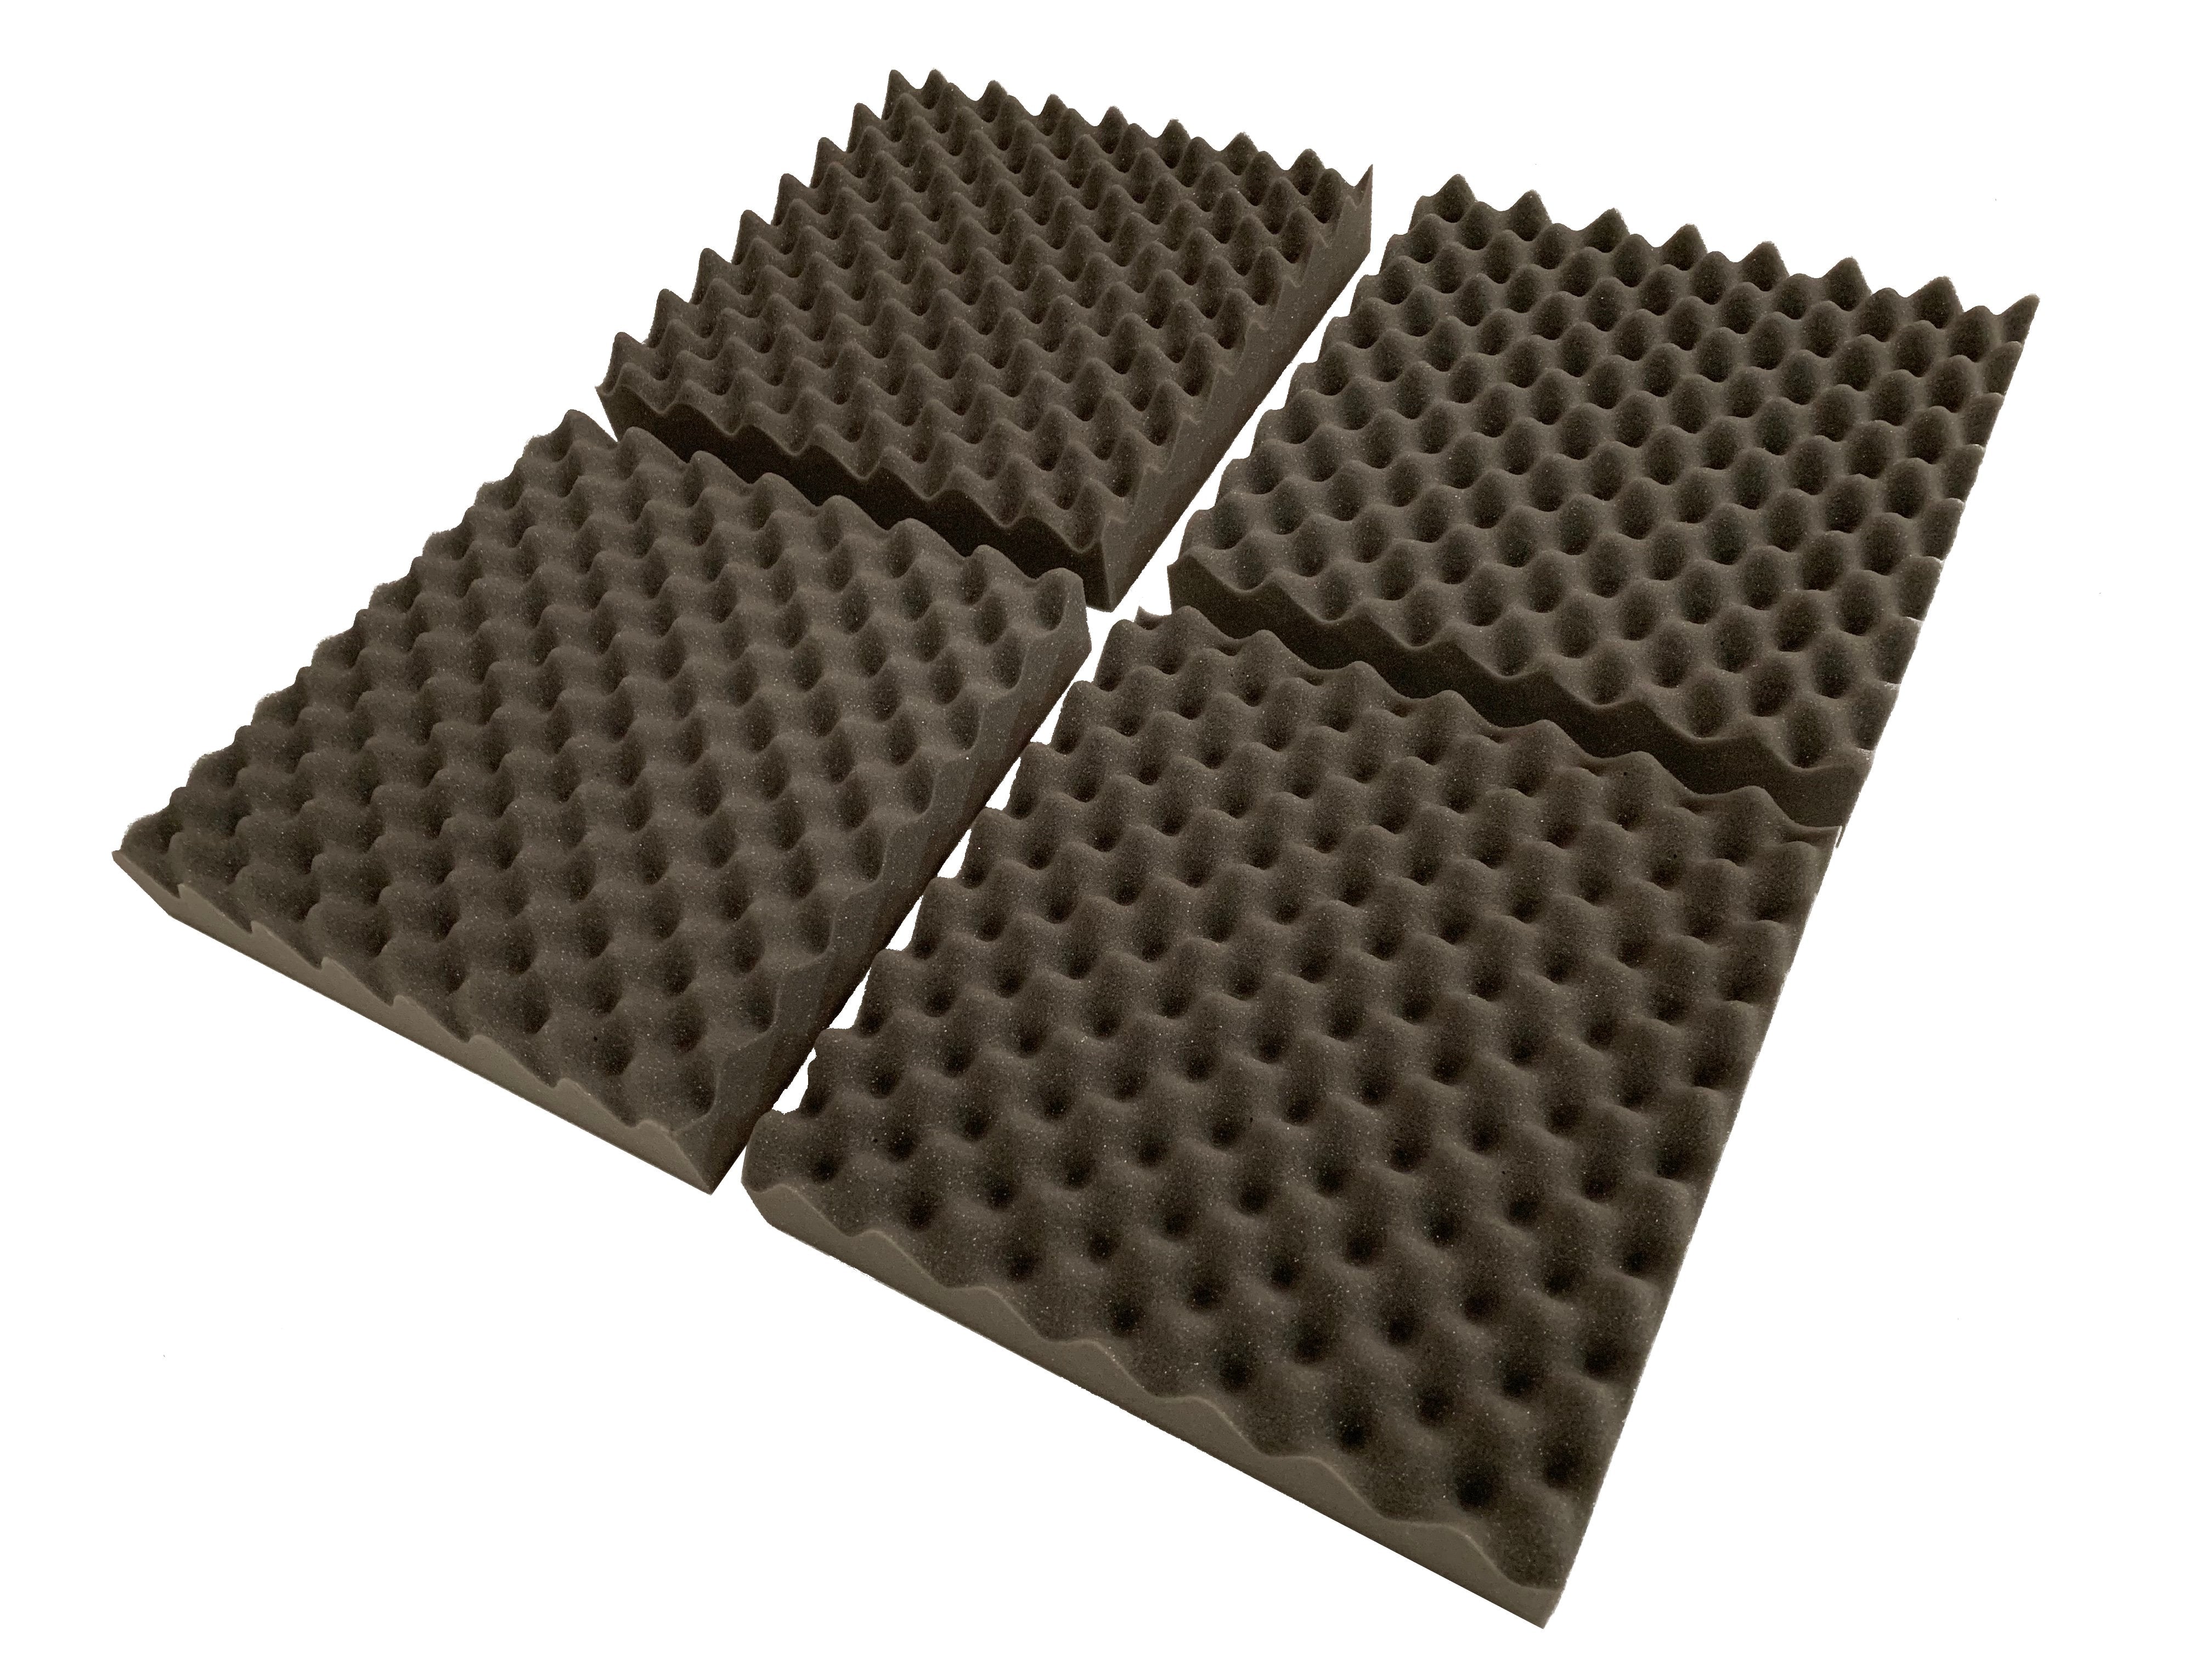 F.A.T. PRO 15" Acoustic Studio Foam Tile Pack - Advanced Acoustics